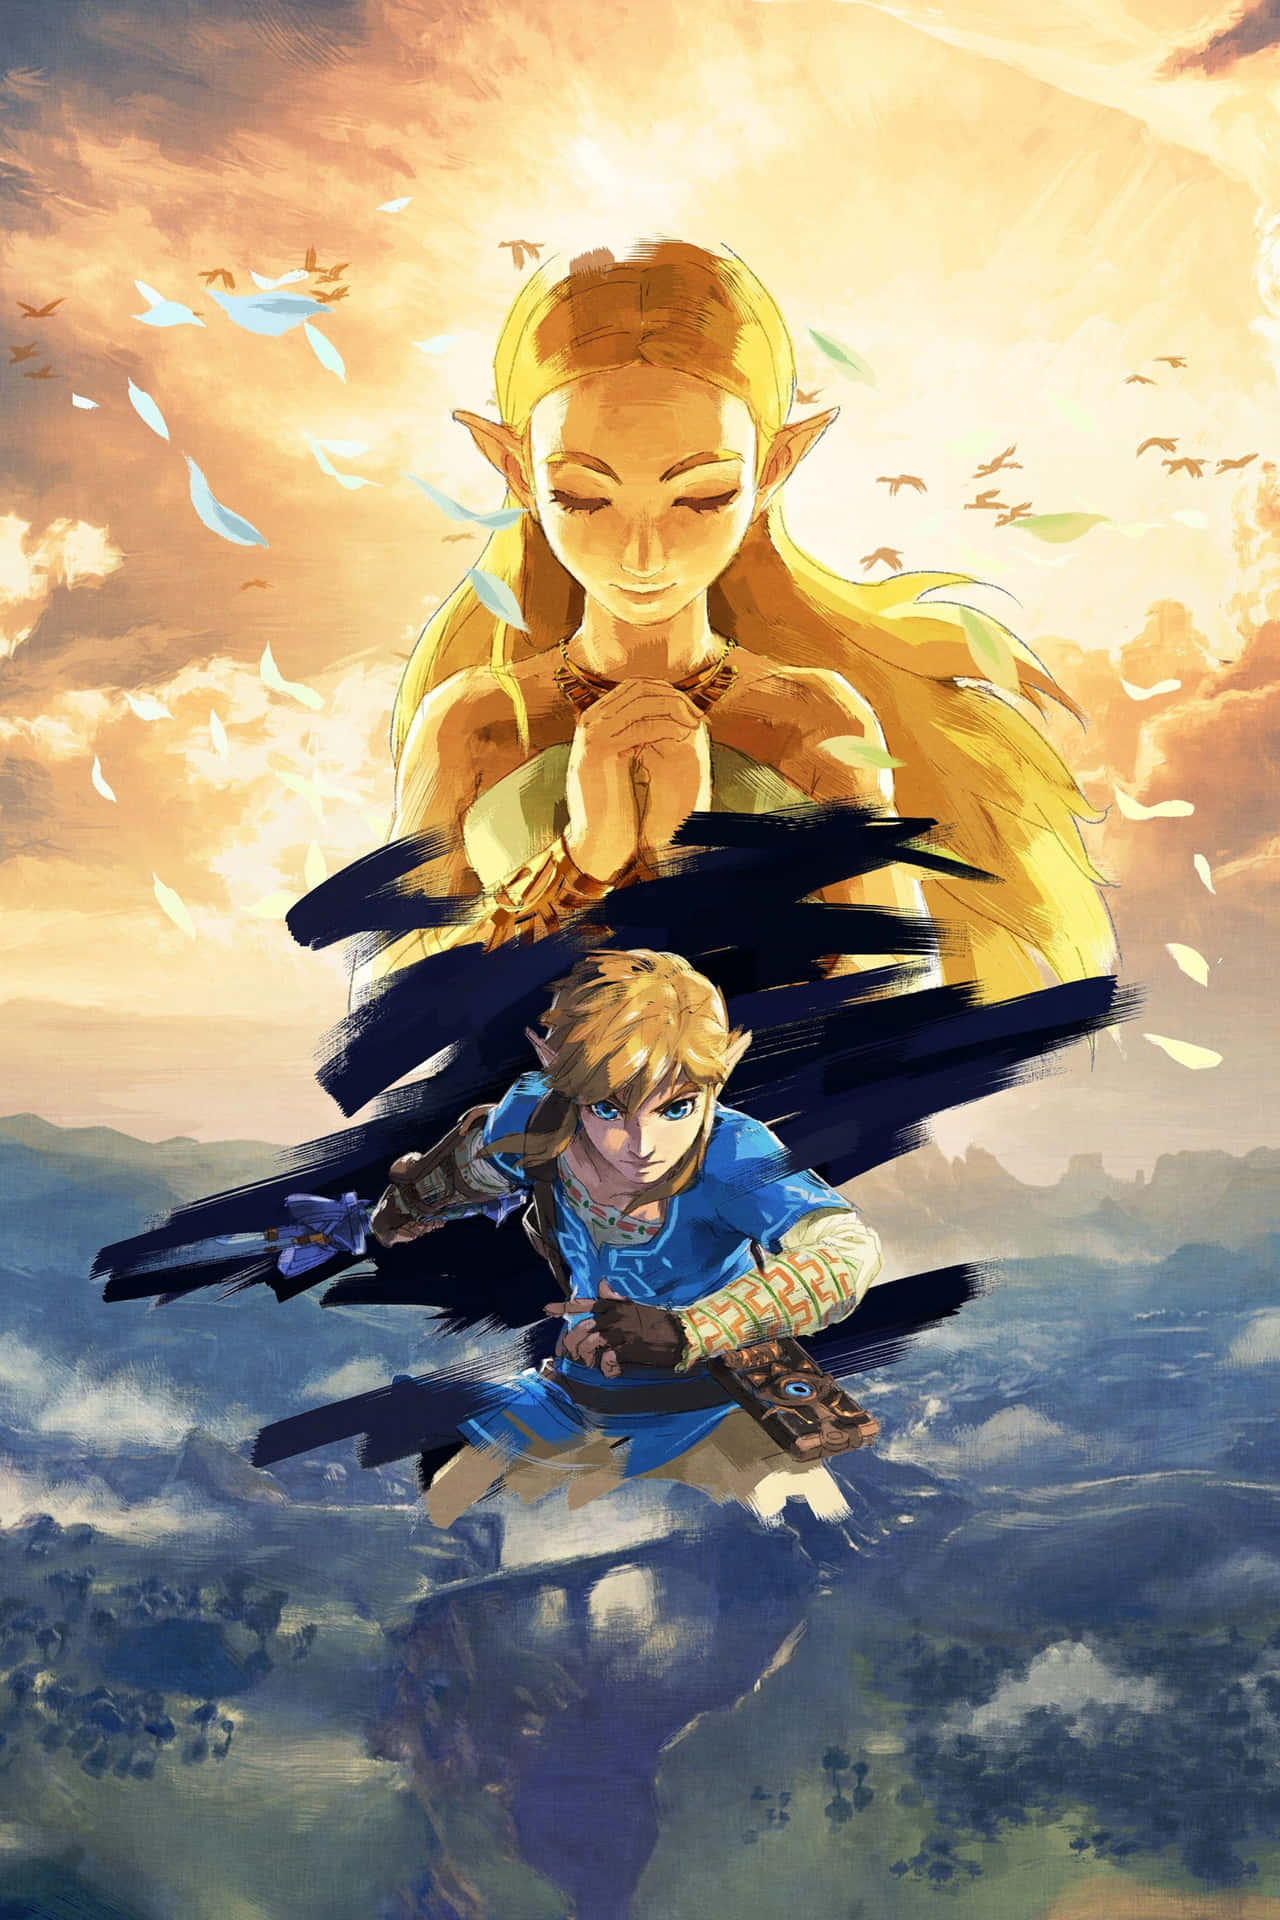 Kunstnerisk afbildning af Link der flyver gennem luften i Zelda Breath Of The Wild 4k Wallpaper